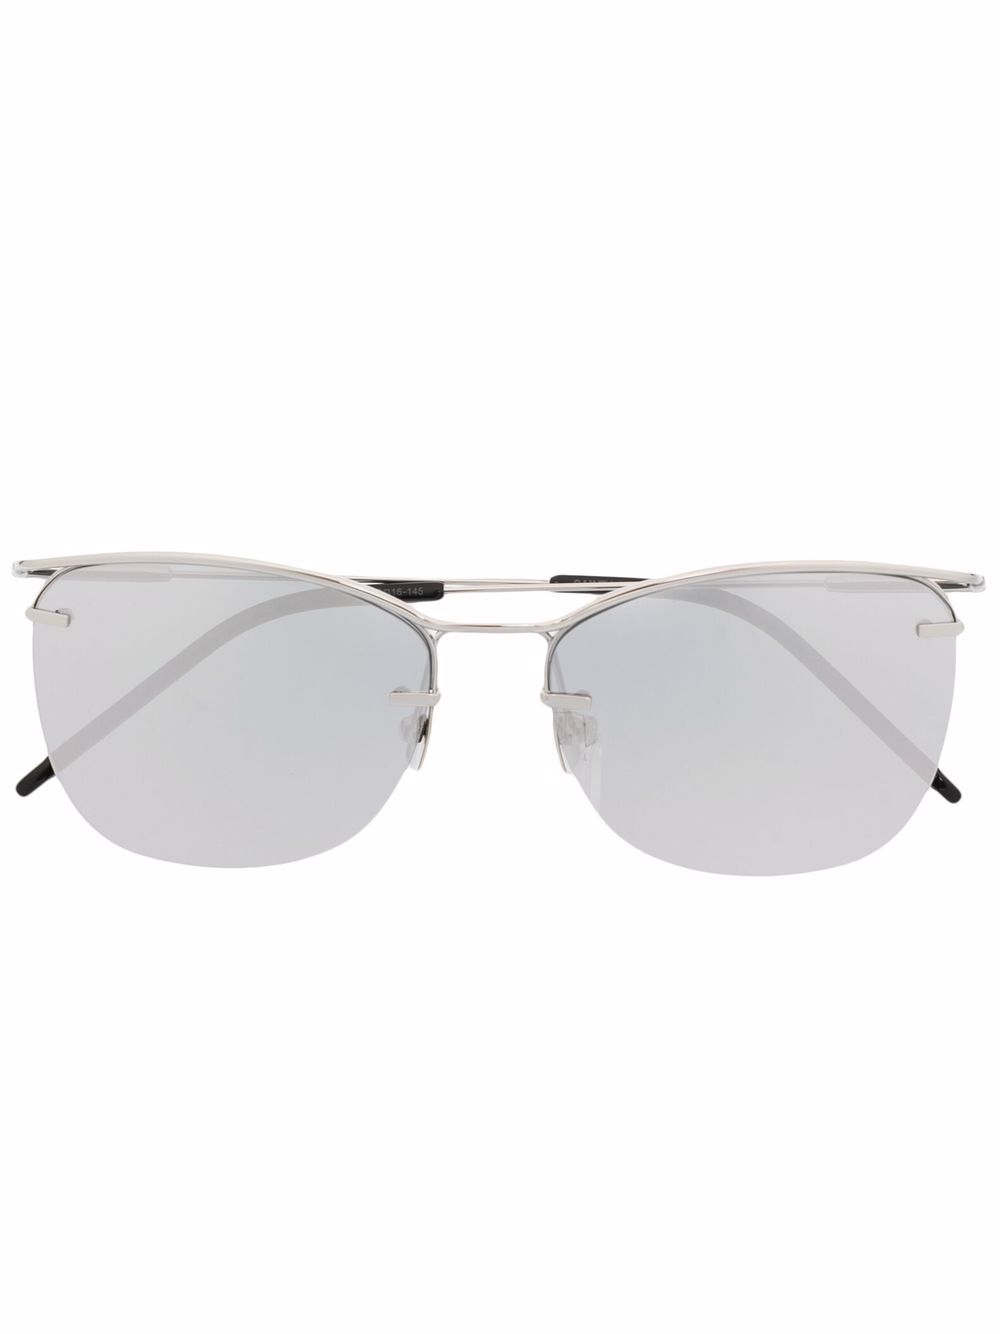 фото Saint laurent eyewear солнцезащитные очки в квадратной оправе